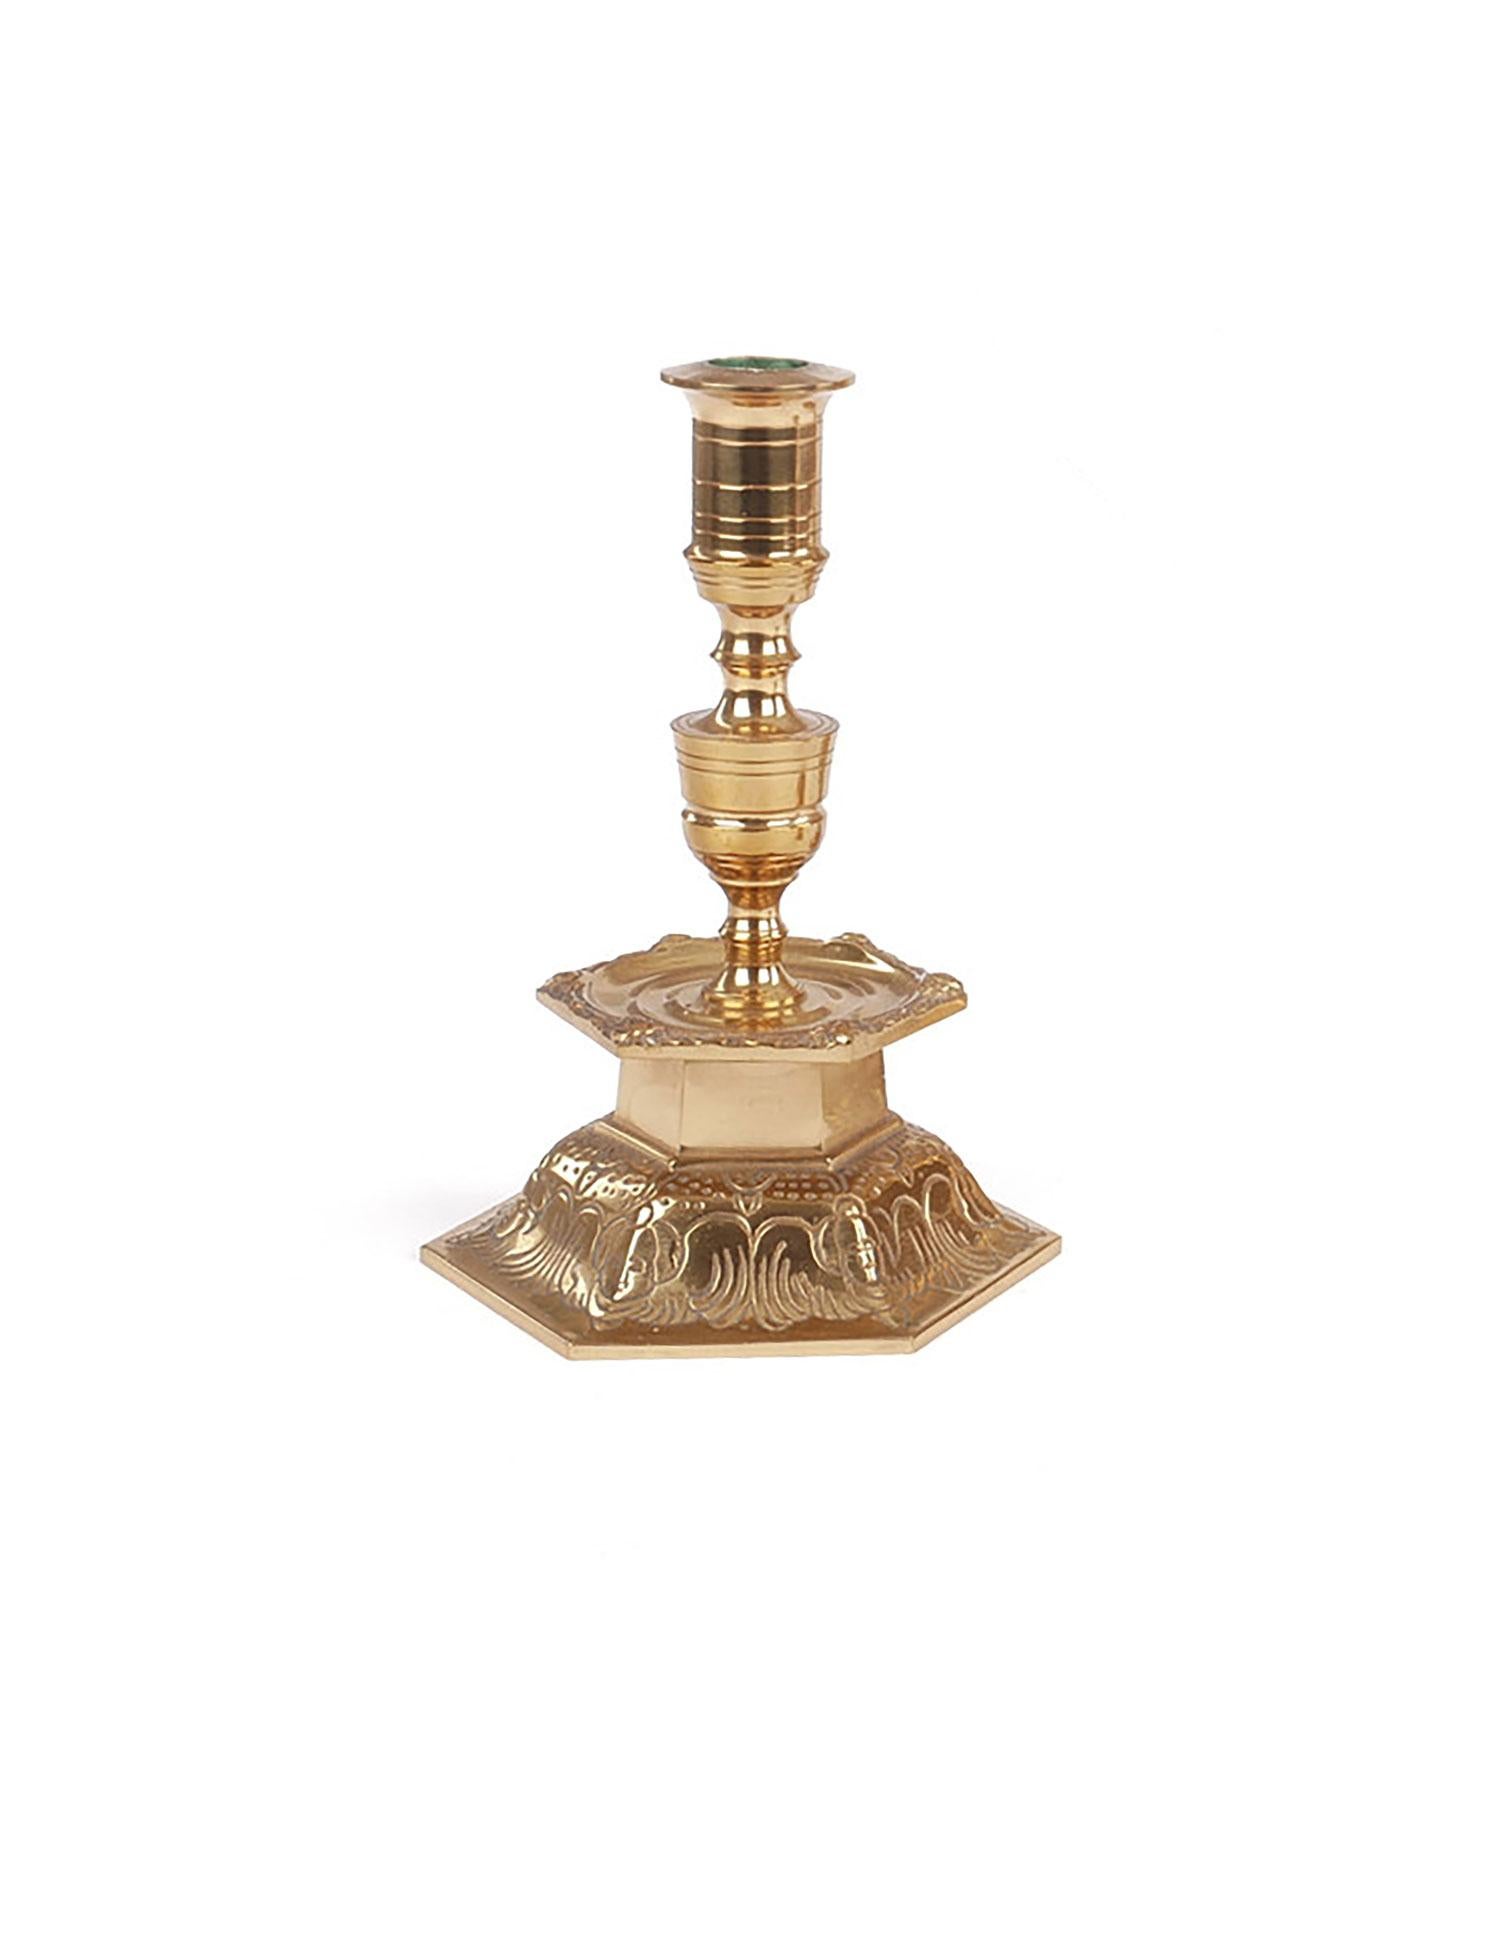 Nous sommes heureux de vous proposer cet ensemble de menorah en laiton martelé avec une paire de petits chandeliers en laiton et un seul chandelier de taille moyenne. À quelques semaines de la fête de Hanoukka, c'est le moment de s'offrir une